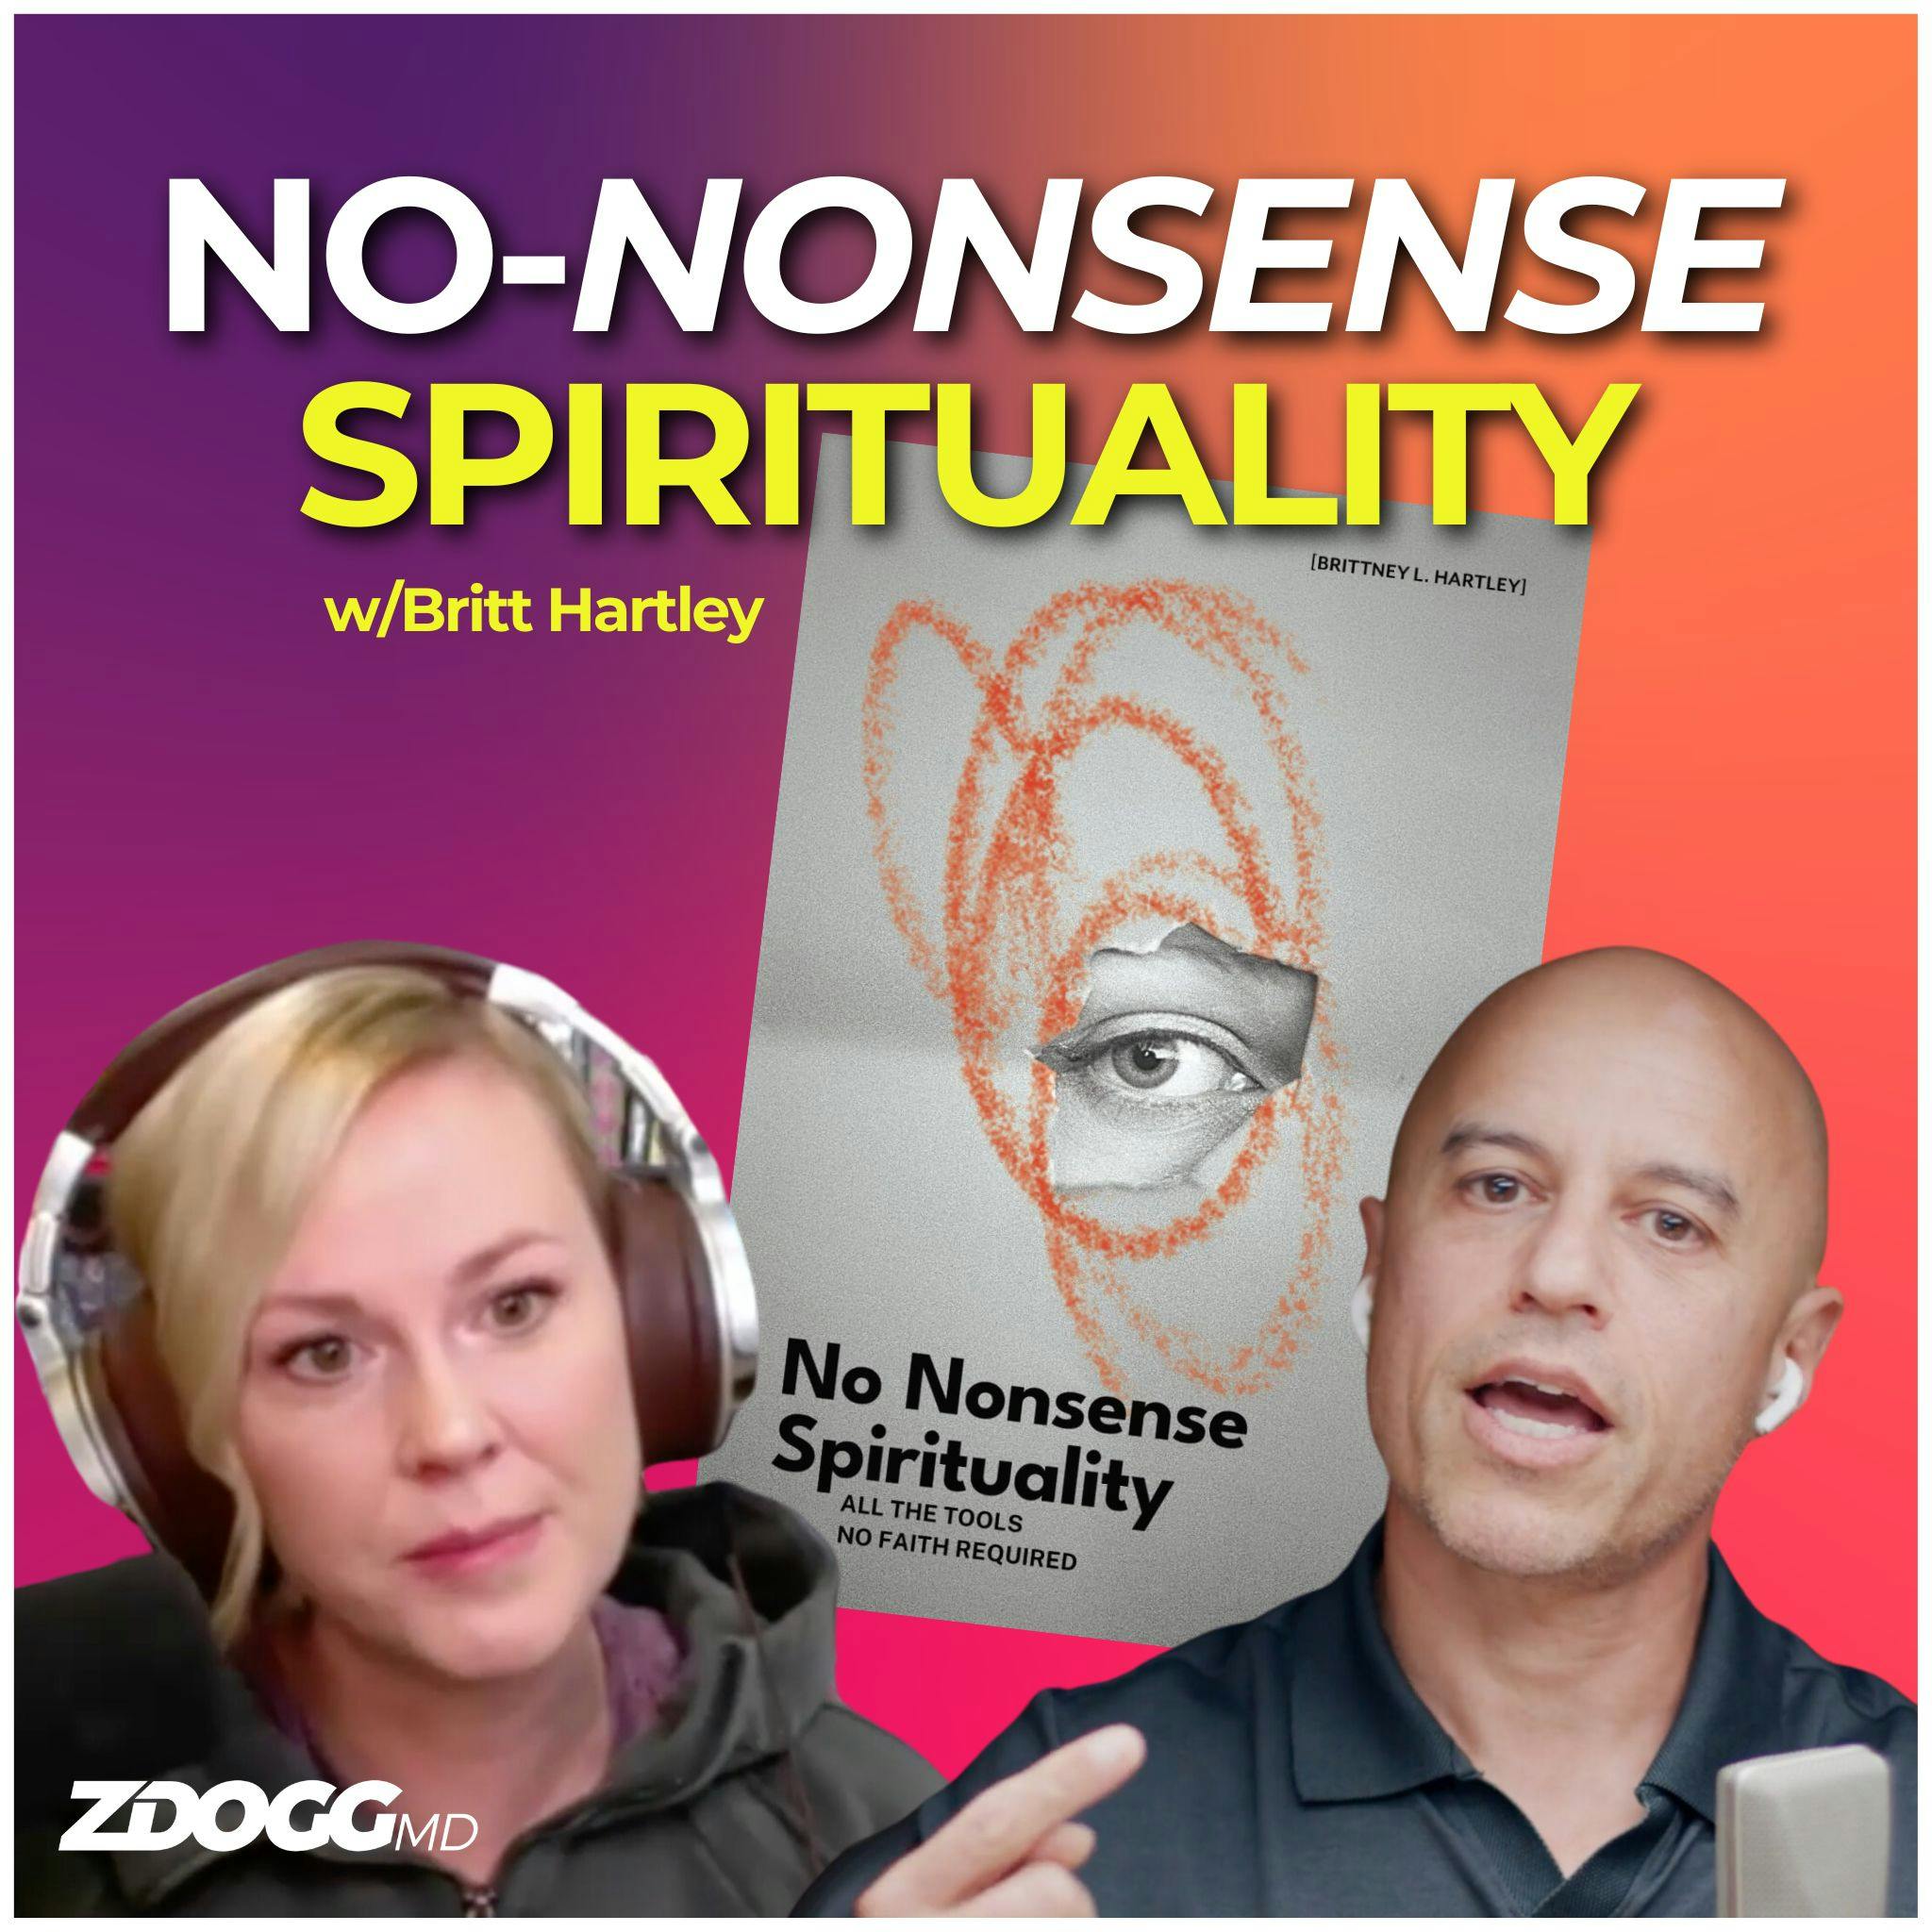 No-Nonsense Spirituality (w/Britt Hartley)